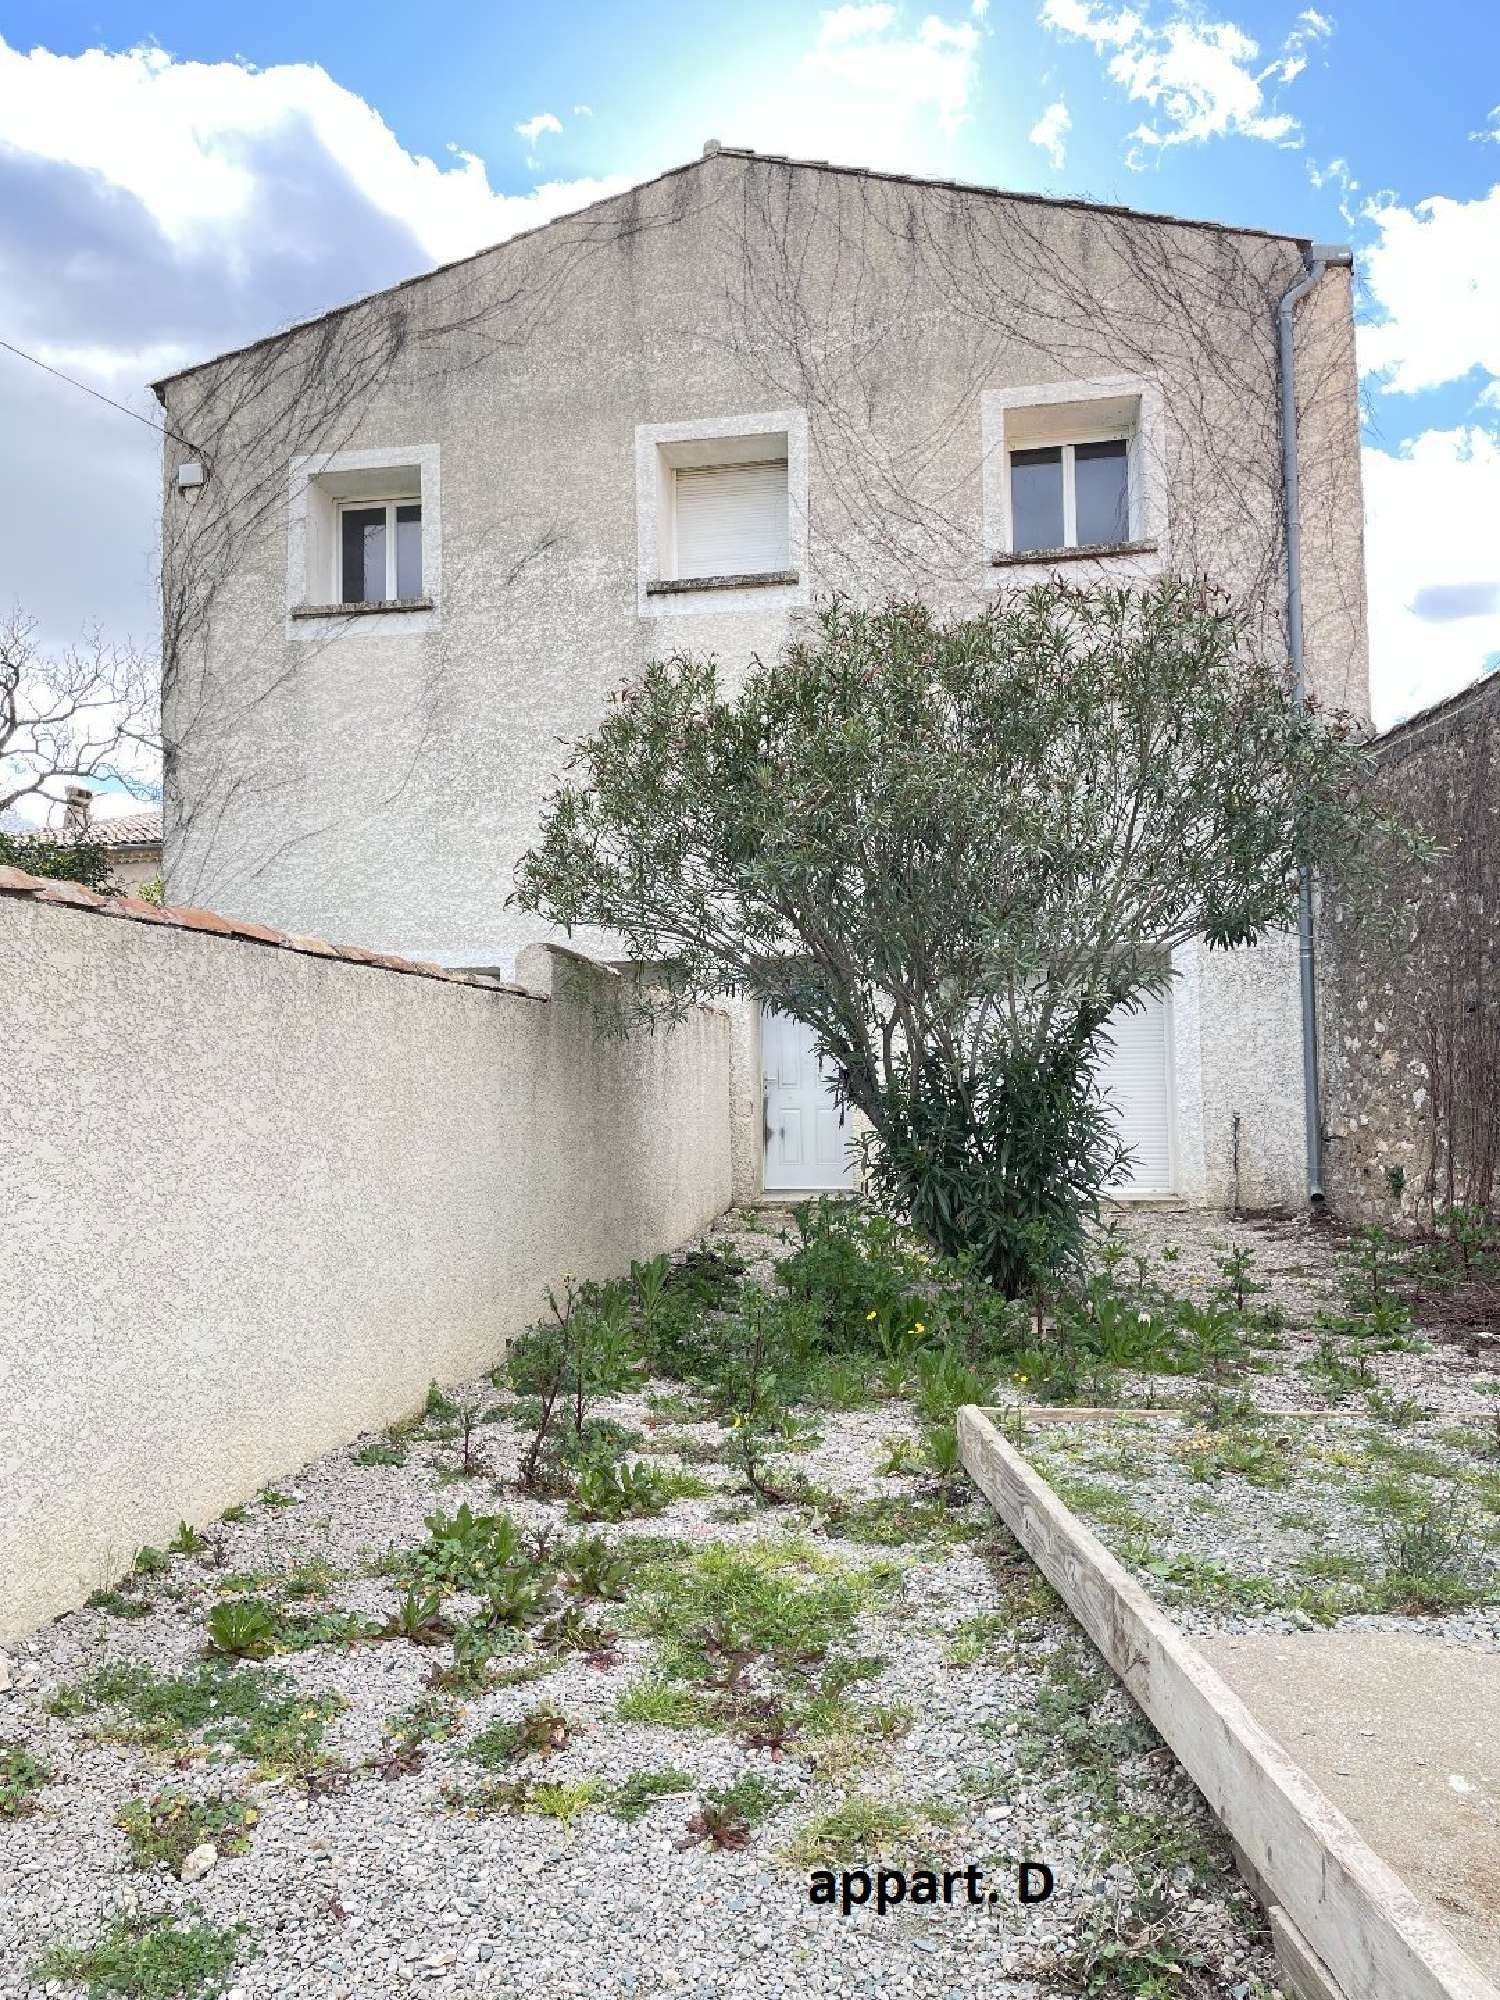  à vendre maison Montpeyroux Hérault 2